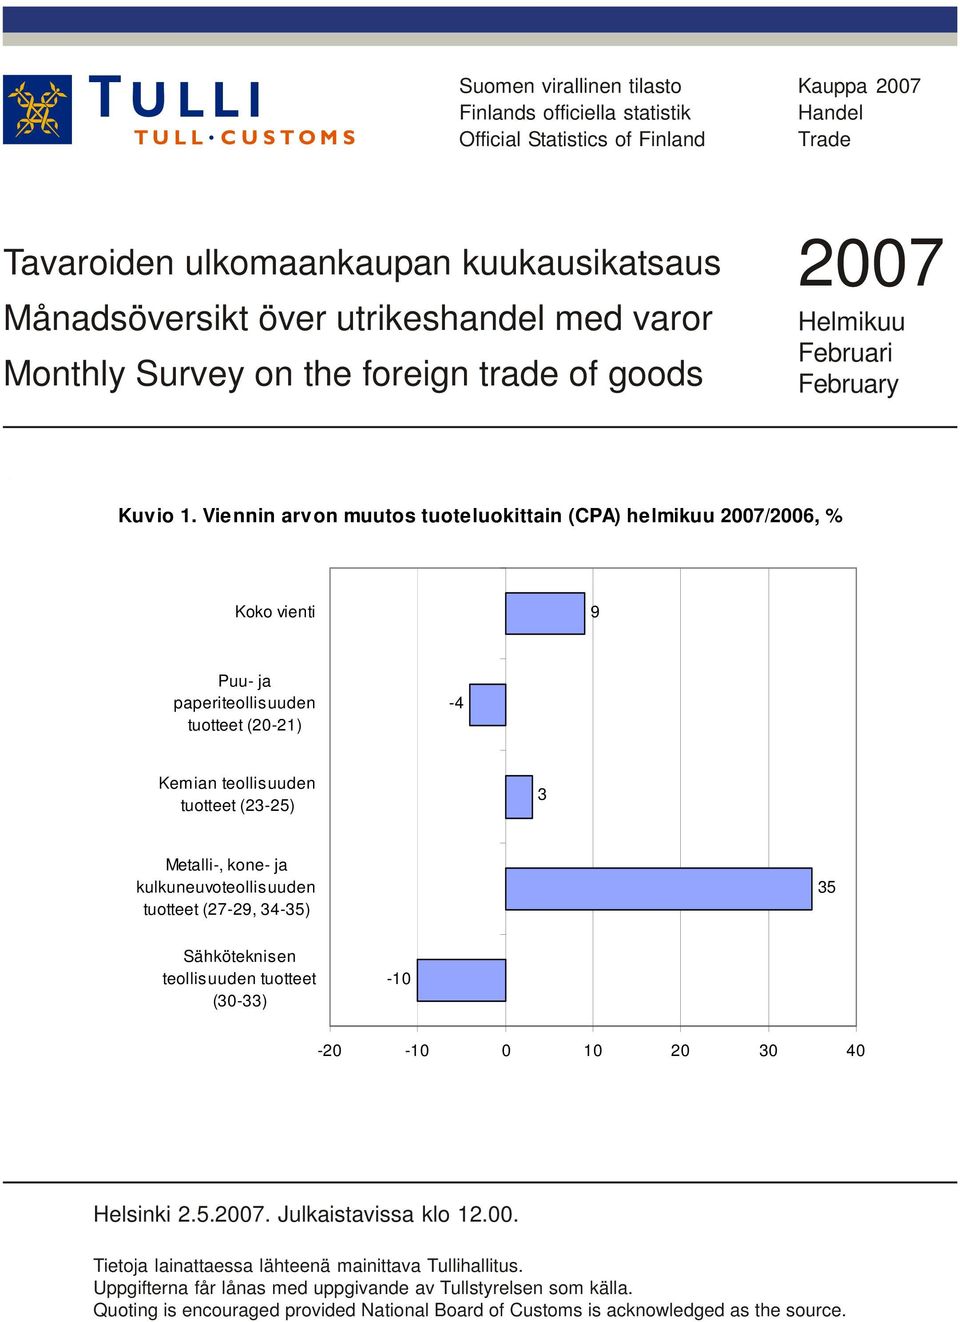 Viennin arvon muutos tuoteluokittain (CPA) helmikuu 2007/2006, % Koko vienti 9 Puu- ja paperiteollisuuden tuotteet (20-21) -4 Kemian teollisuuden tuotteet (23-25) 3 Metalli-, kone- ja